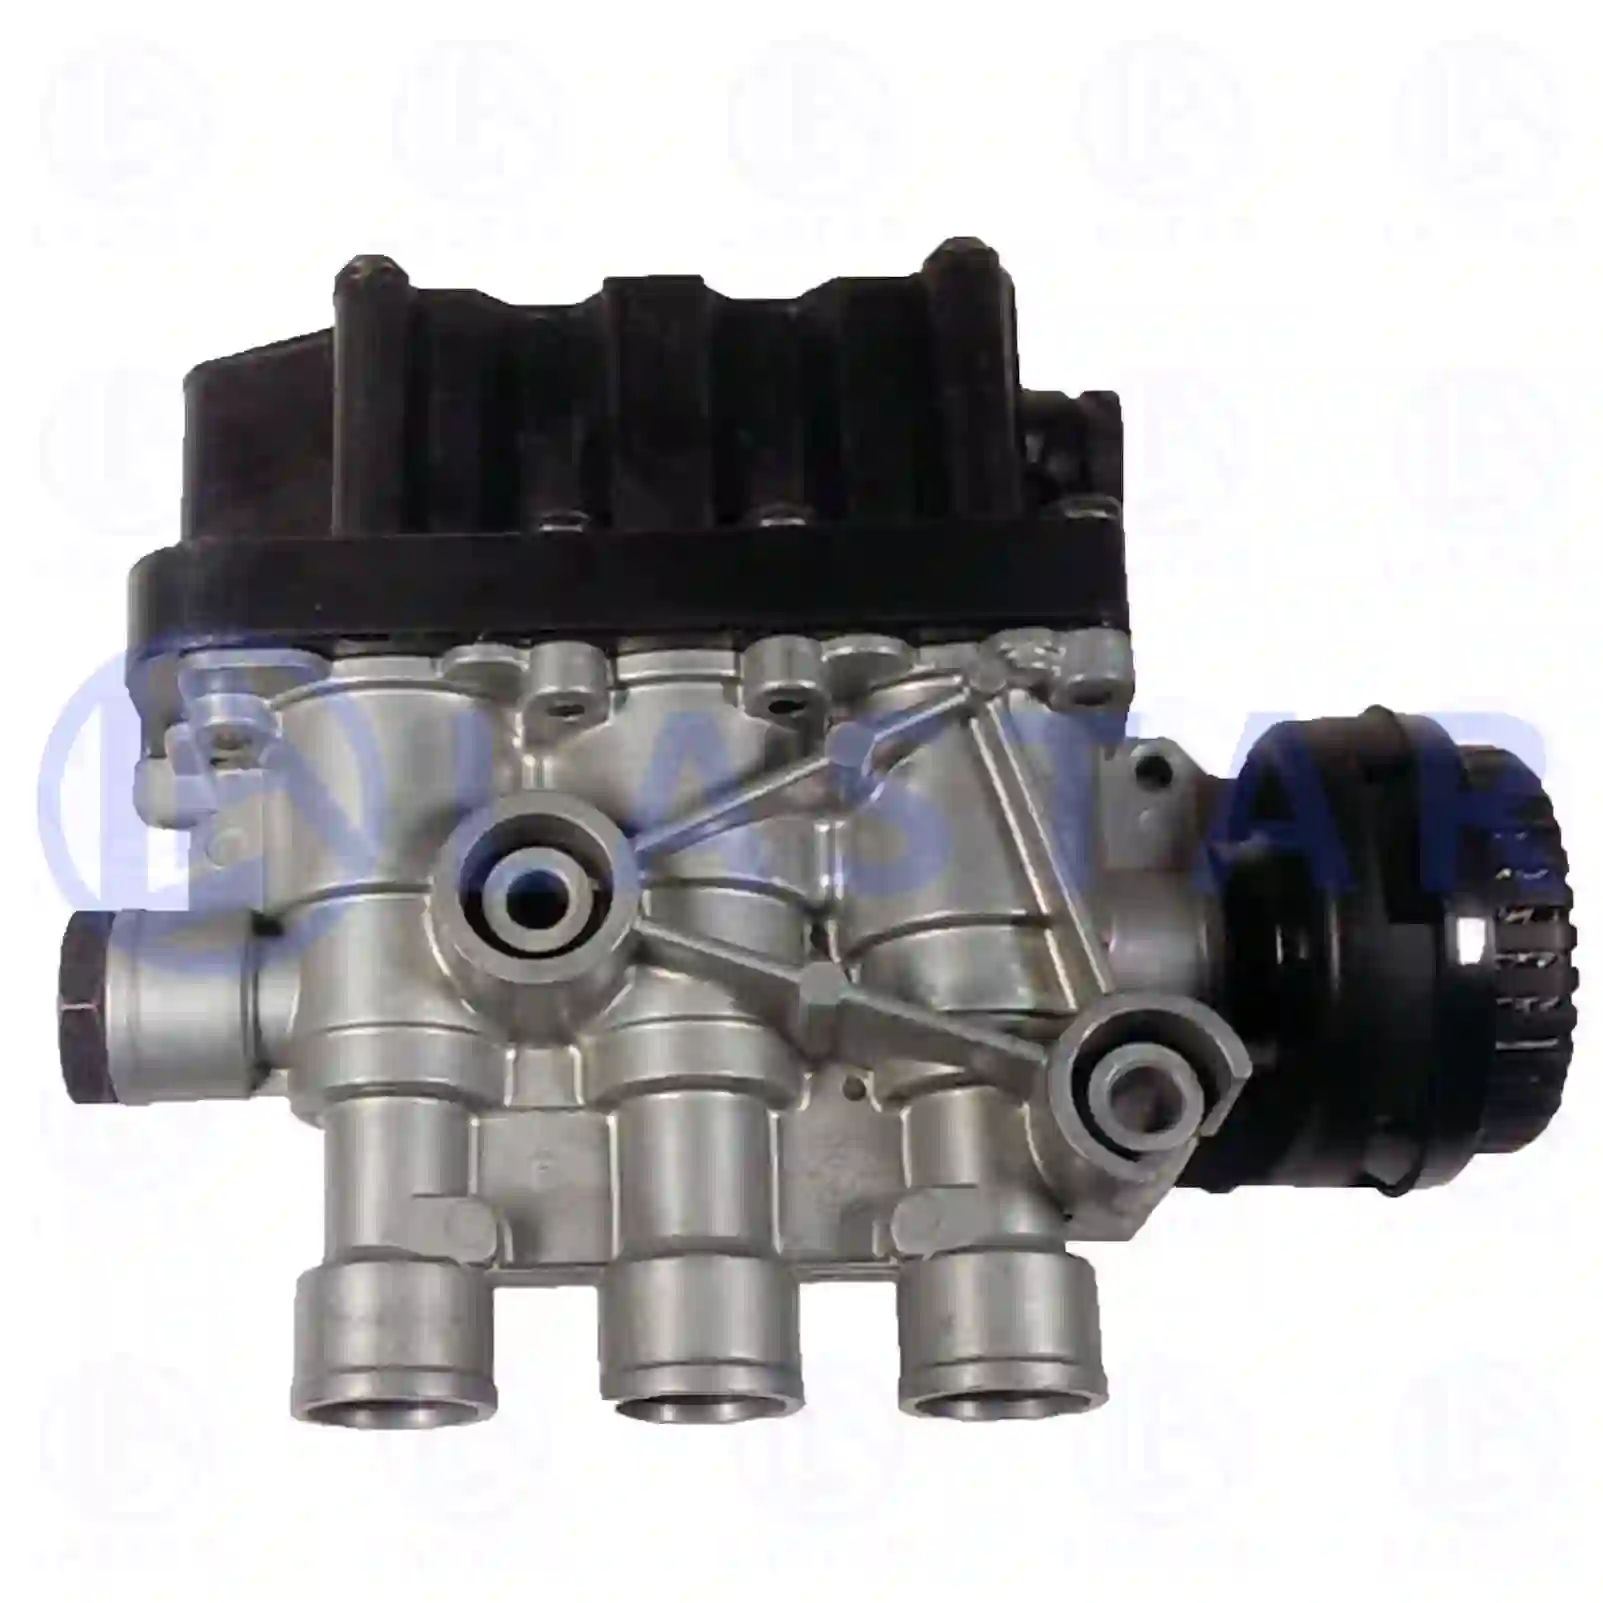 Solenoid Valve Solenoid valve, ECAS, la no: 77727815 ,  oem no:0527488, 1506152, 1506179, 527488, 97106463, 81259026154, 81259029154, 0003276225, 102140300, 5021170199, 1934986, 8241683000 Lastar Spare Part | Truck Spare Parts, Auotomotive Spare Parts